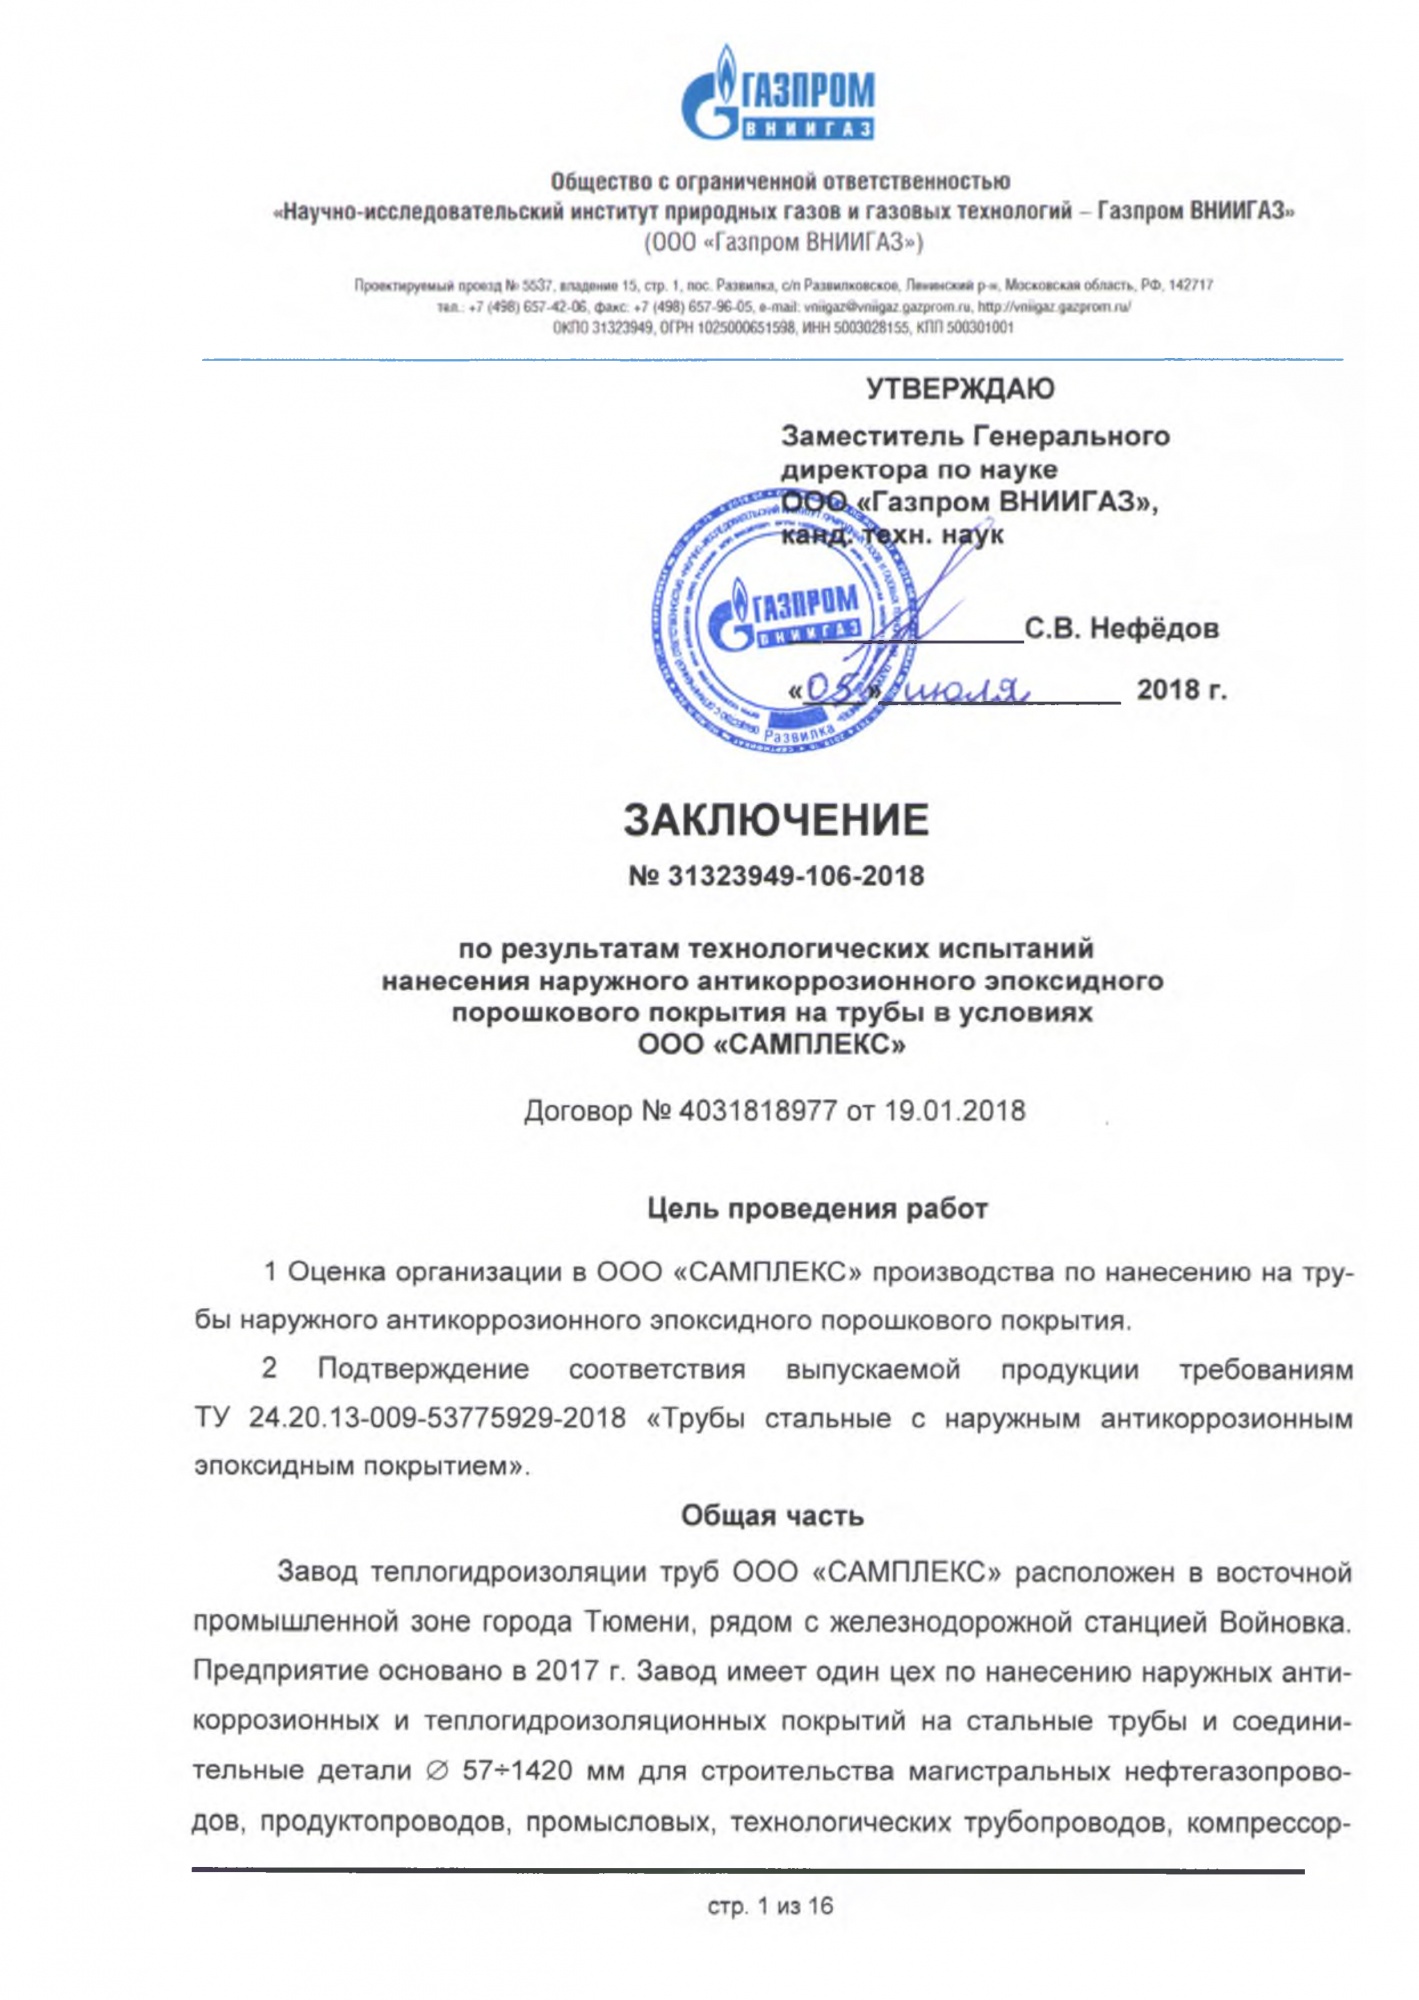 Заключение ООО Газпром ВНИИГАЗ по результатам испытаний ТУ 24.20.13-009-53775929-2018.jpg